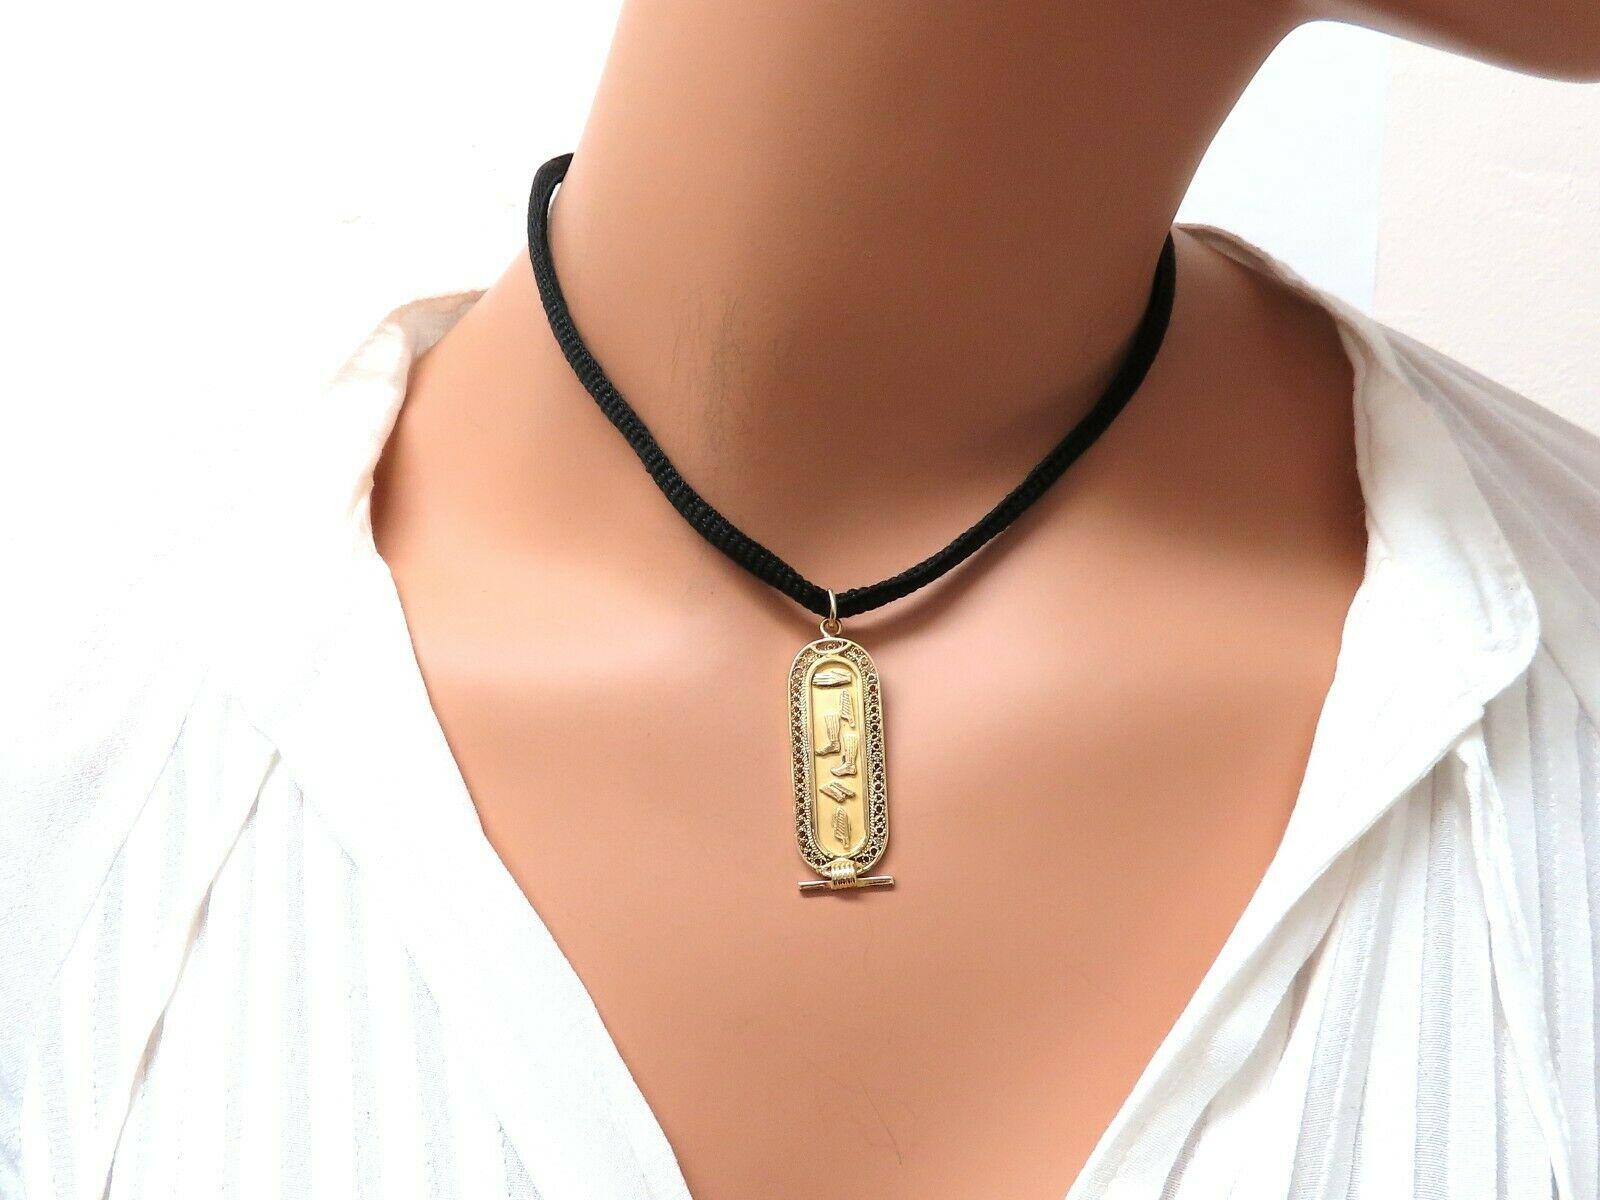 hieroglyphic pendant